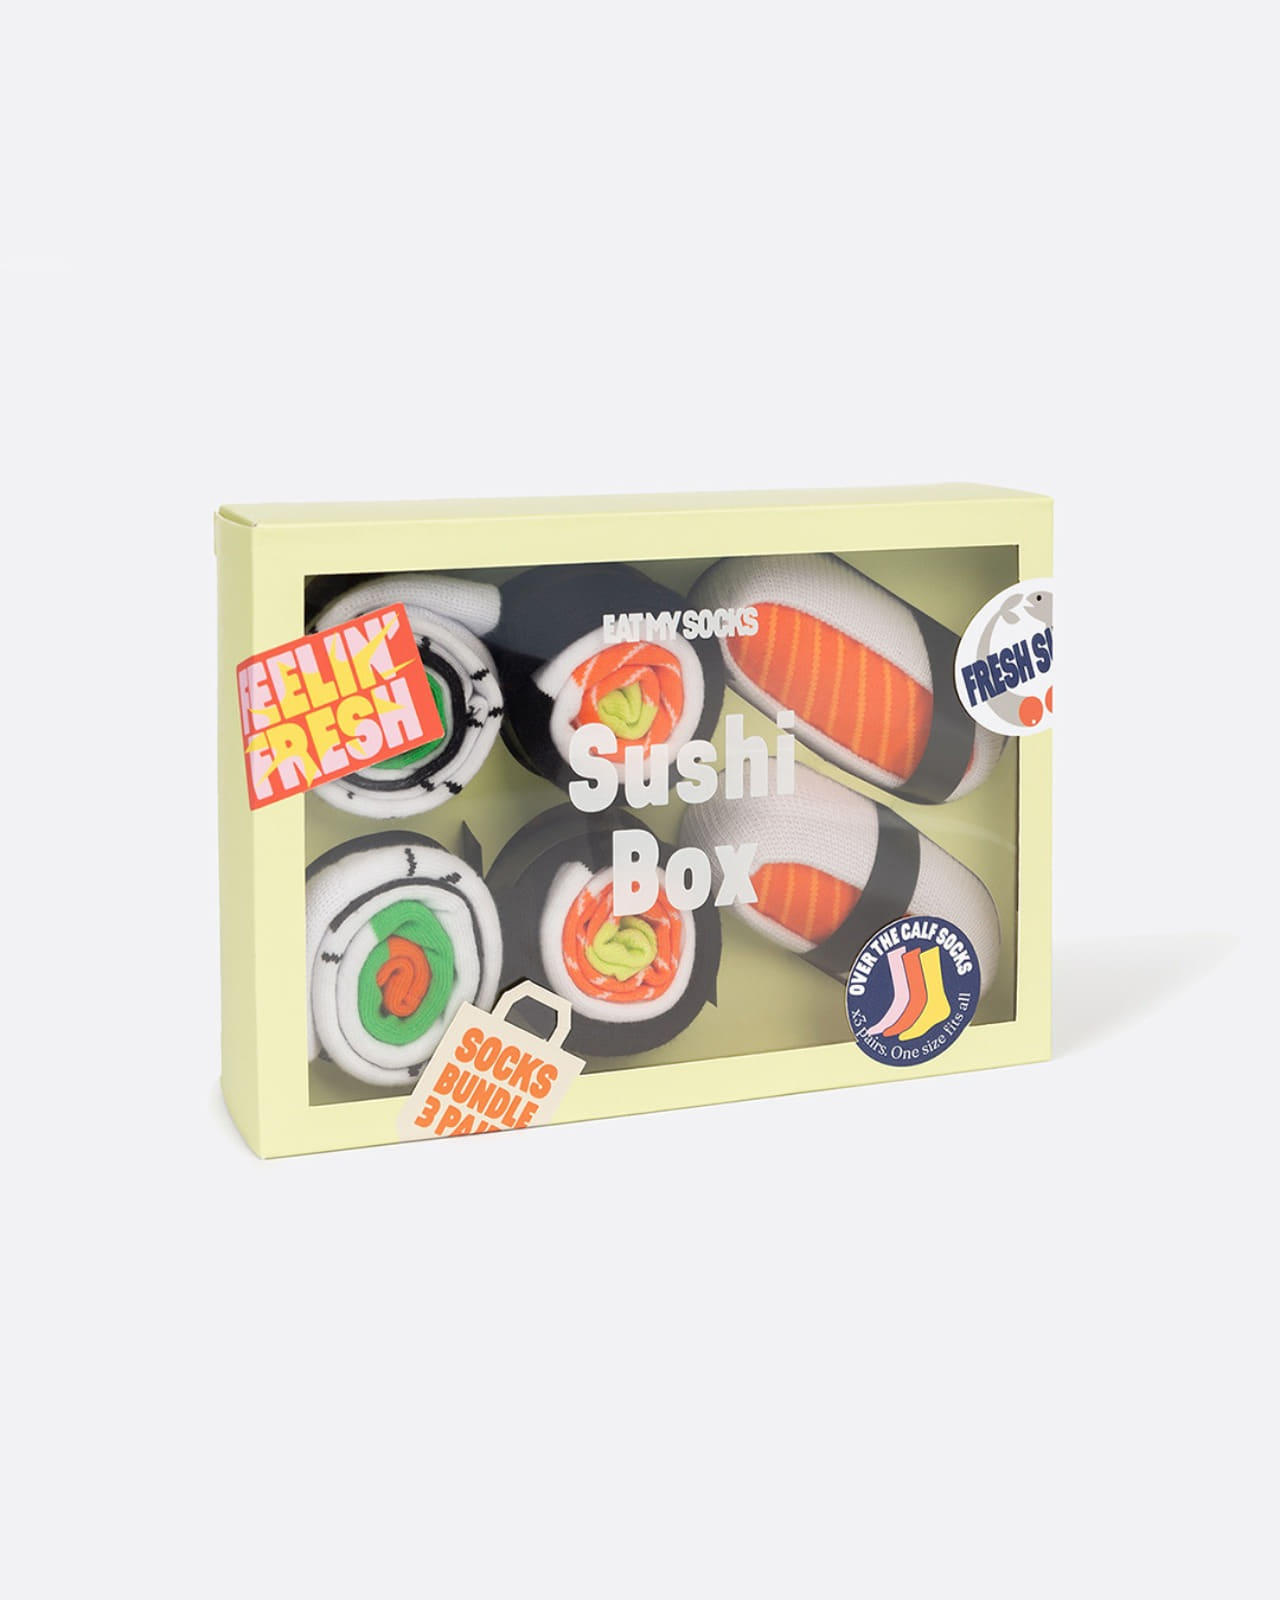 [EAT MY SOCKS] Sushi Box (3 pairs)